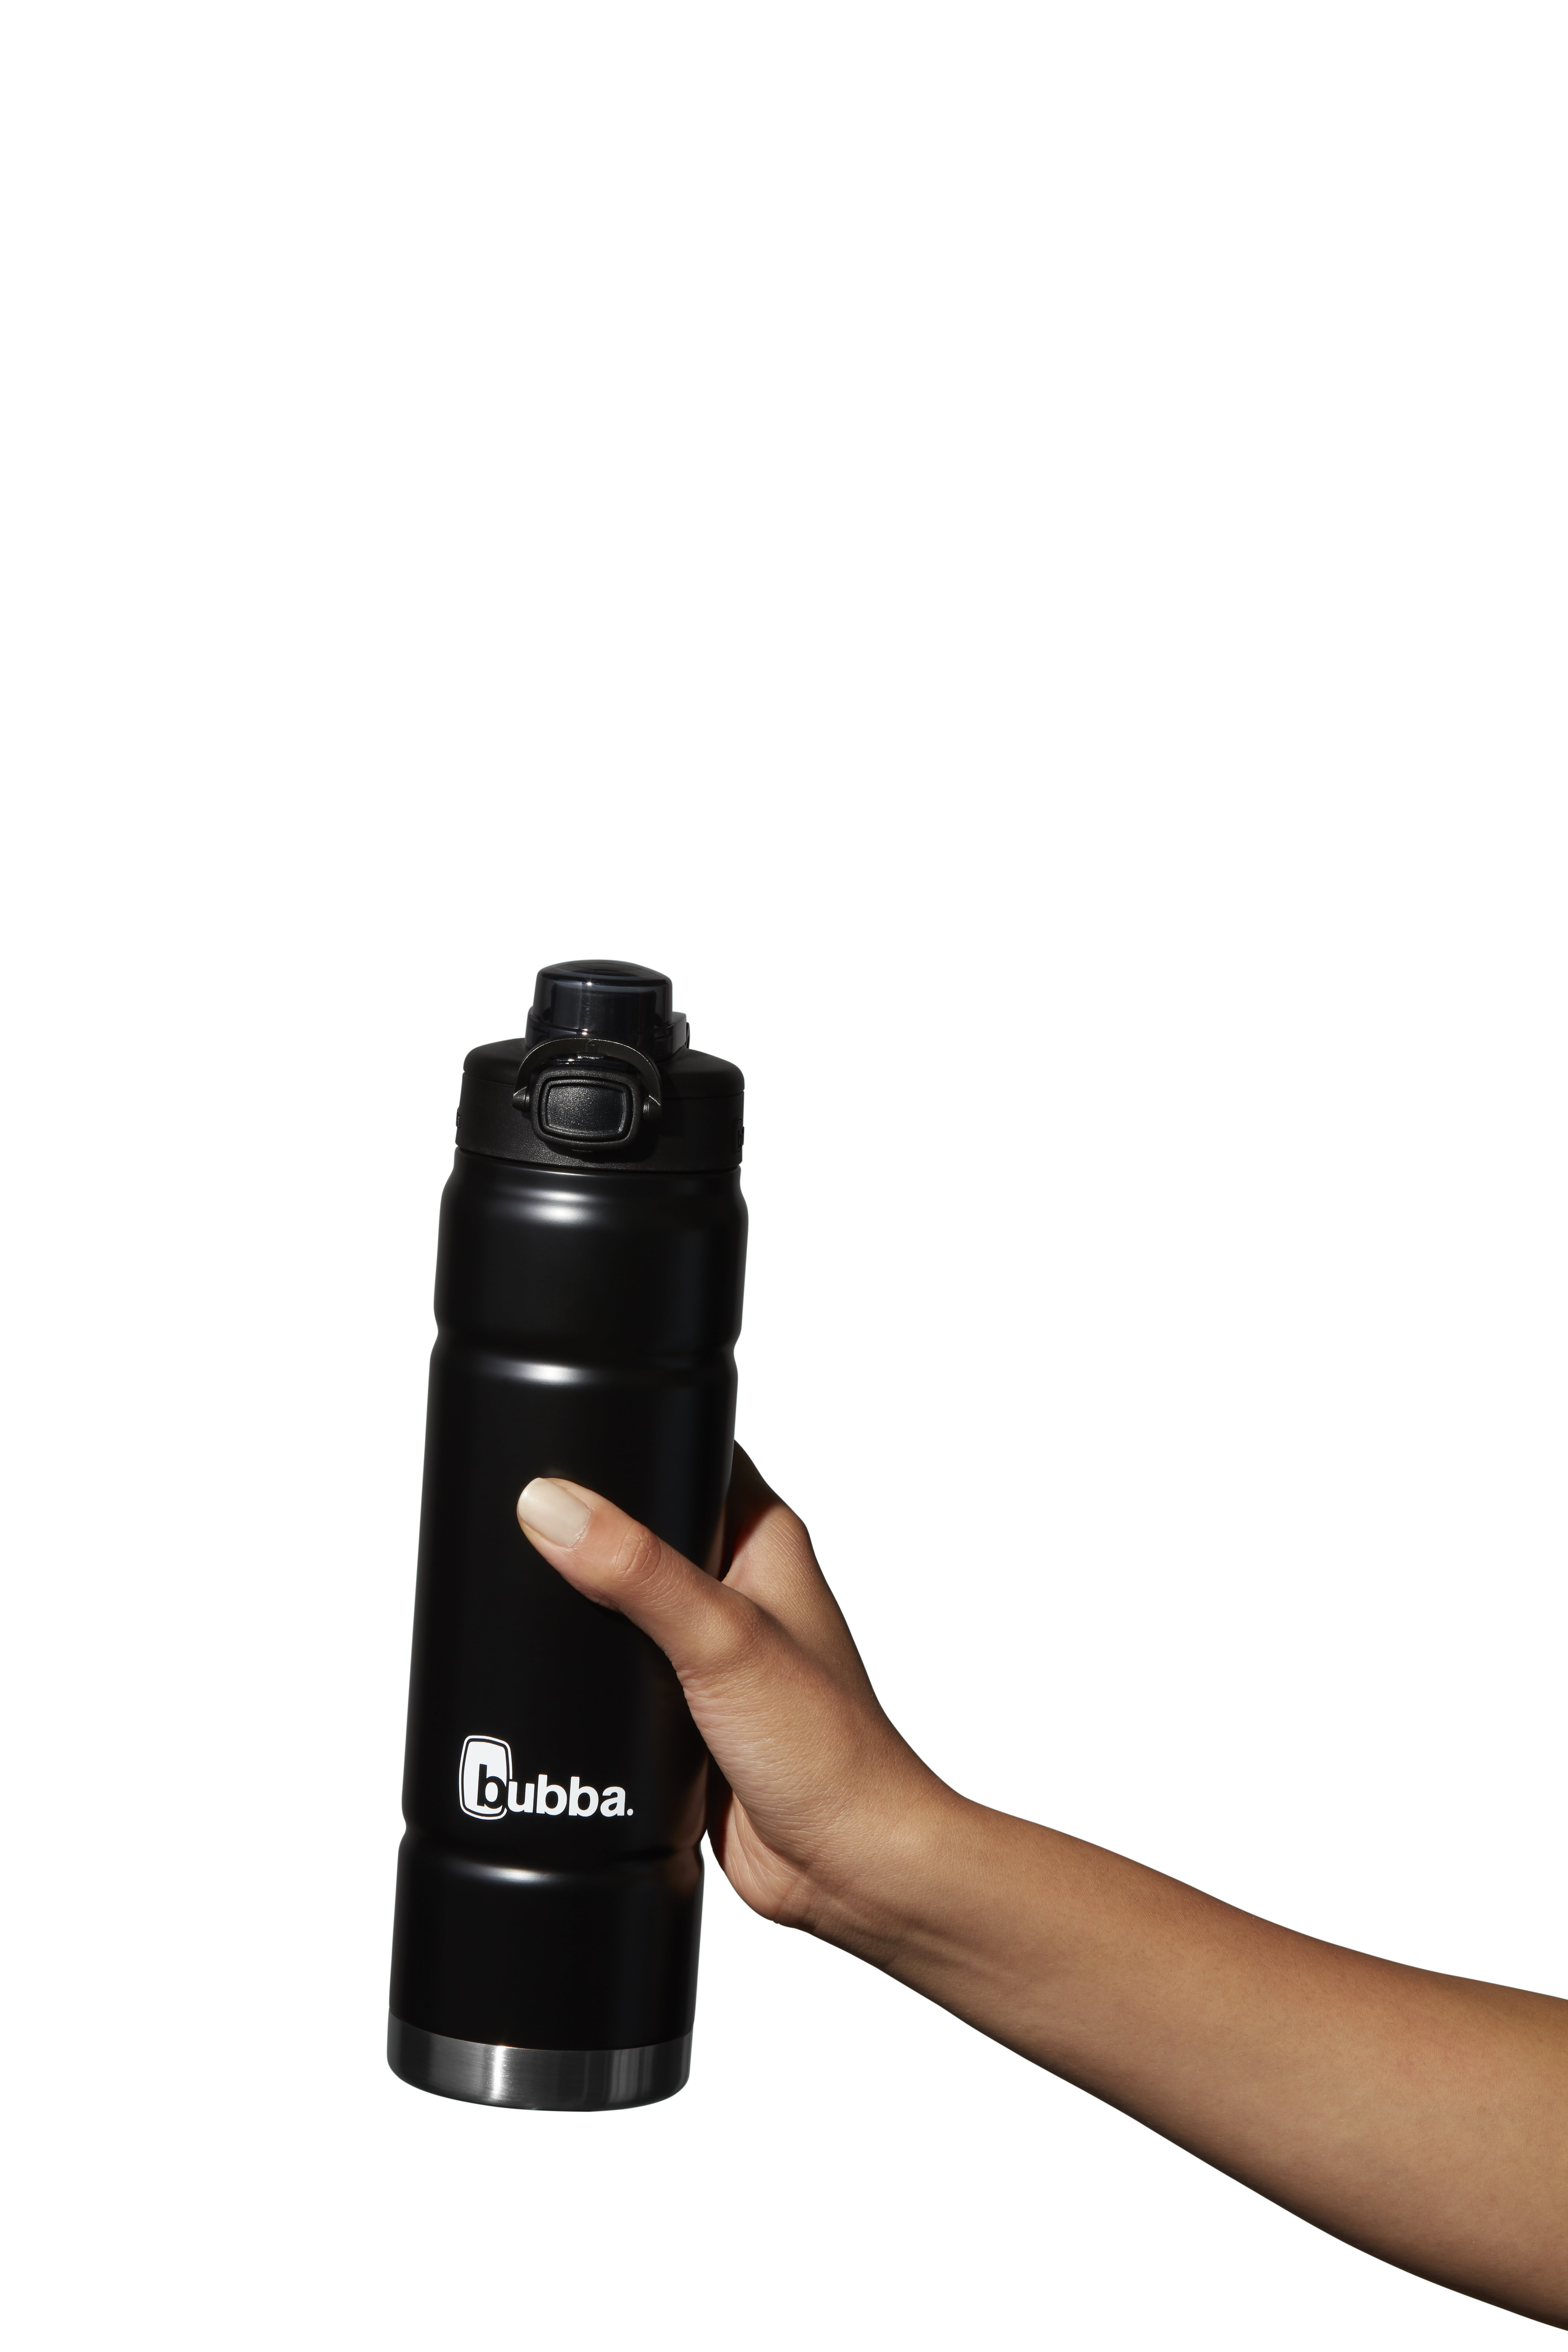 Bubba Trailblazer Stainless Steel Water Bottle Push Button Lid Rubberized in Teal, 24 fl oz.